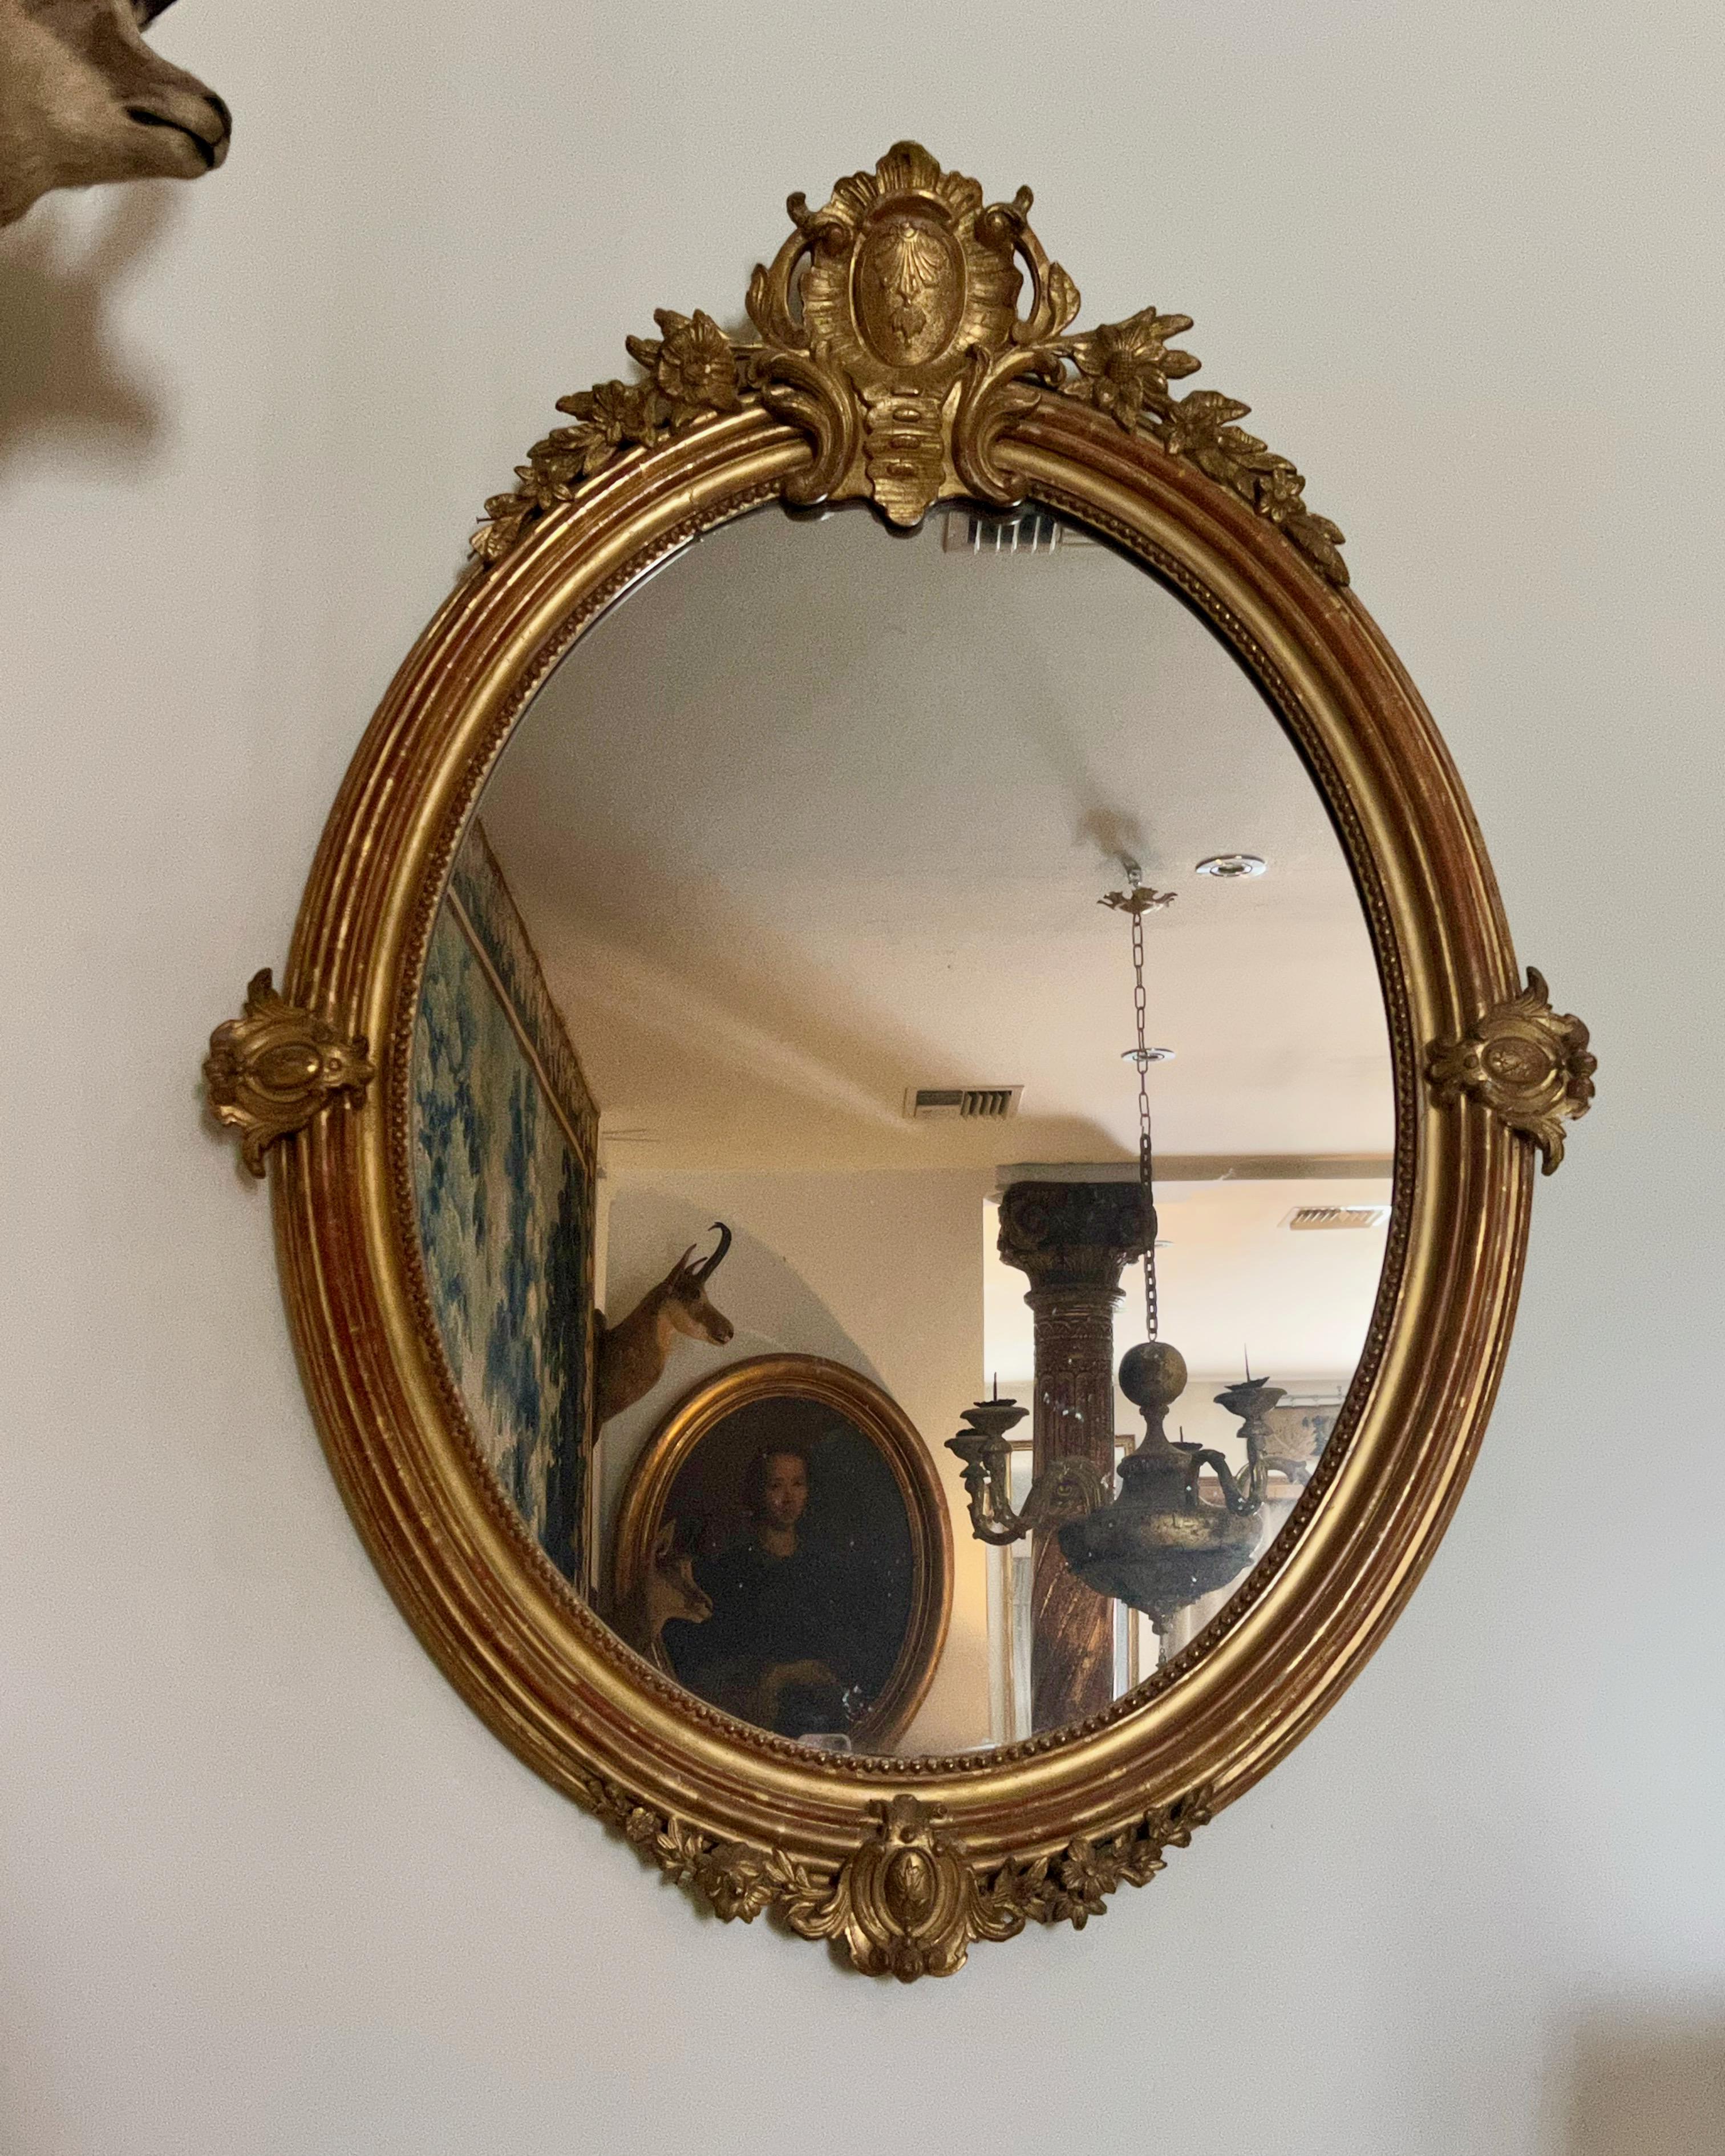 Miroir doré de forme ovale de style Louis XVI français du 19e siècle, avec plaque de miroir d'origine et cadre doré patiné d'origine avec des sculptures finement détaillées.
France 19ème siècle.